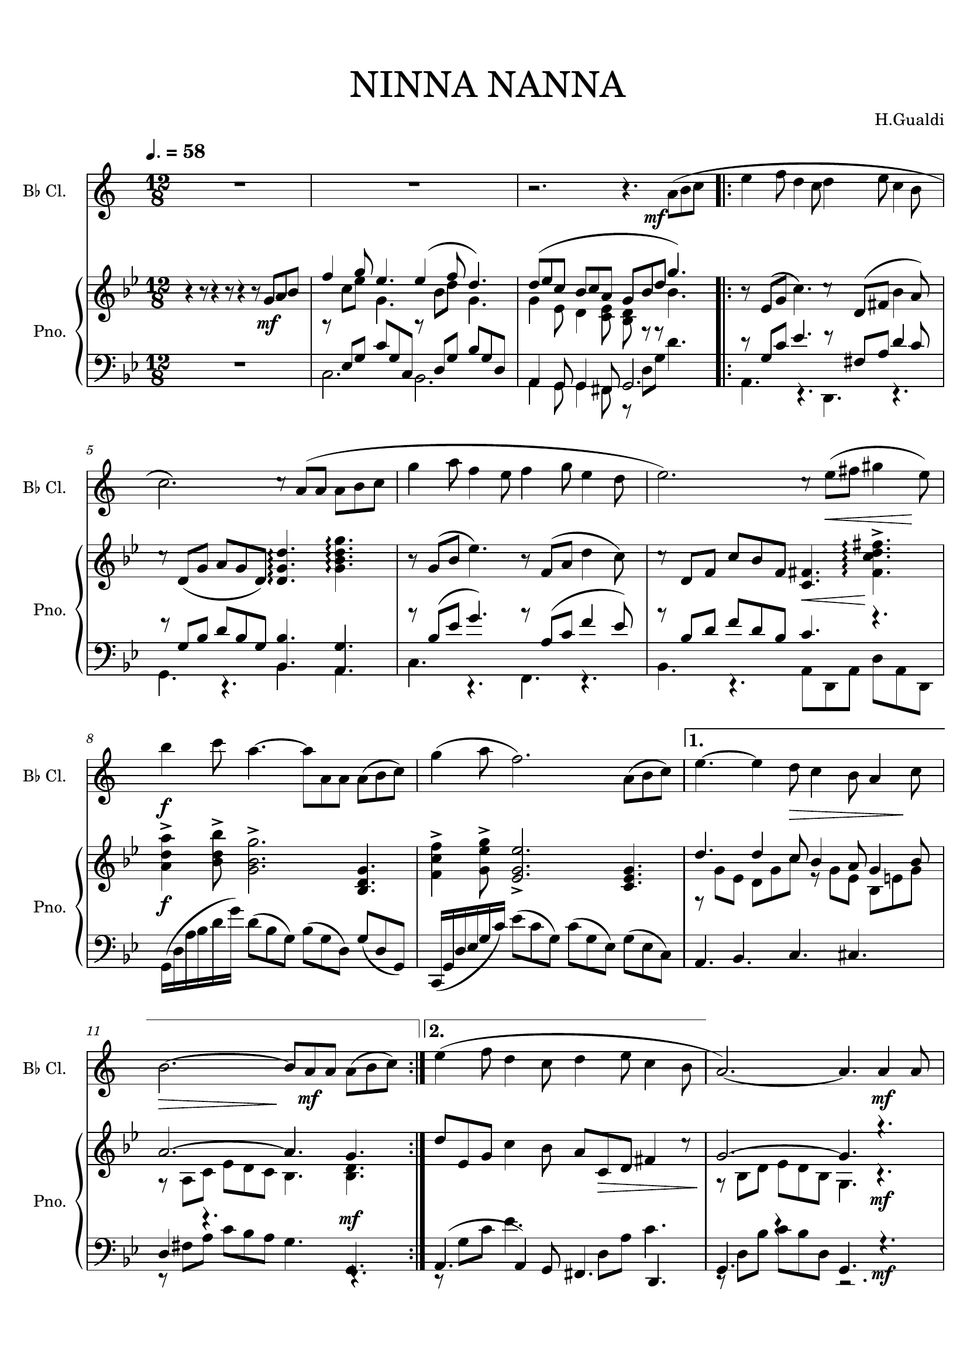 H.Gualdi - NINNA NANNA (클라리넷 / 피아노 반주/ Clarinet) by Paganic